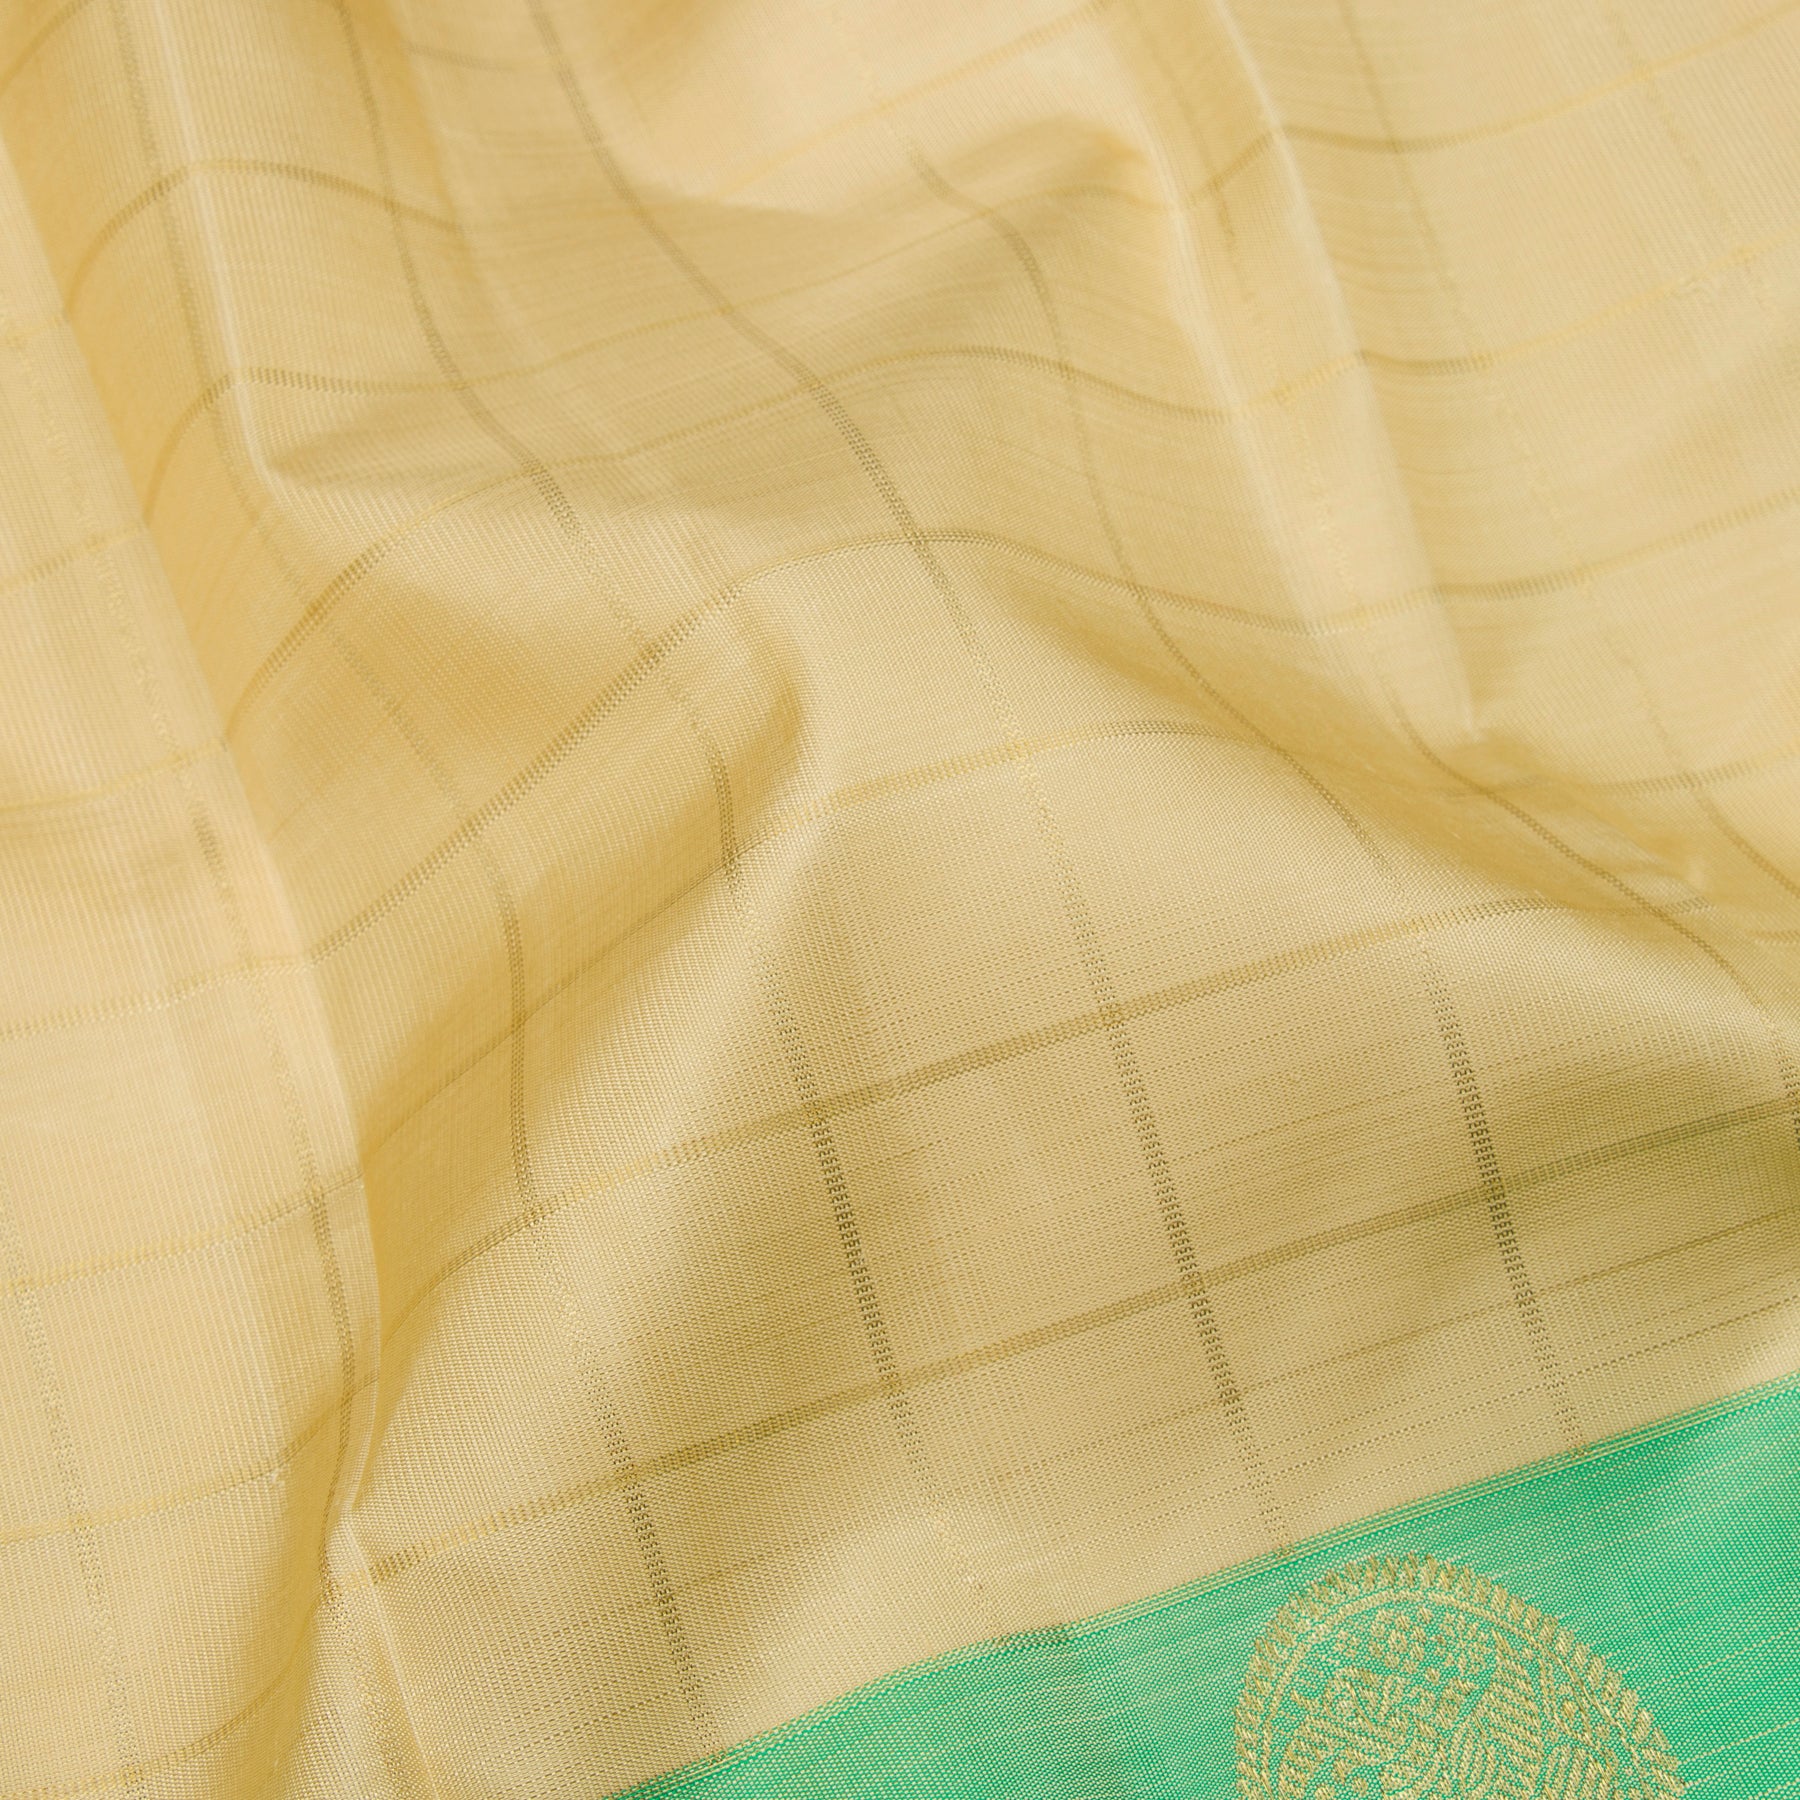 Kanakavalli Kanjivaram Silk Sari 23-595-HS001-13653 - Fabric View